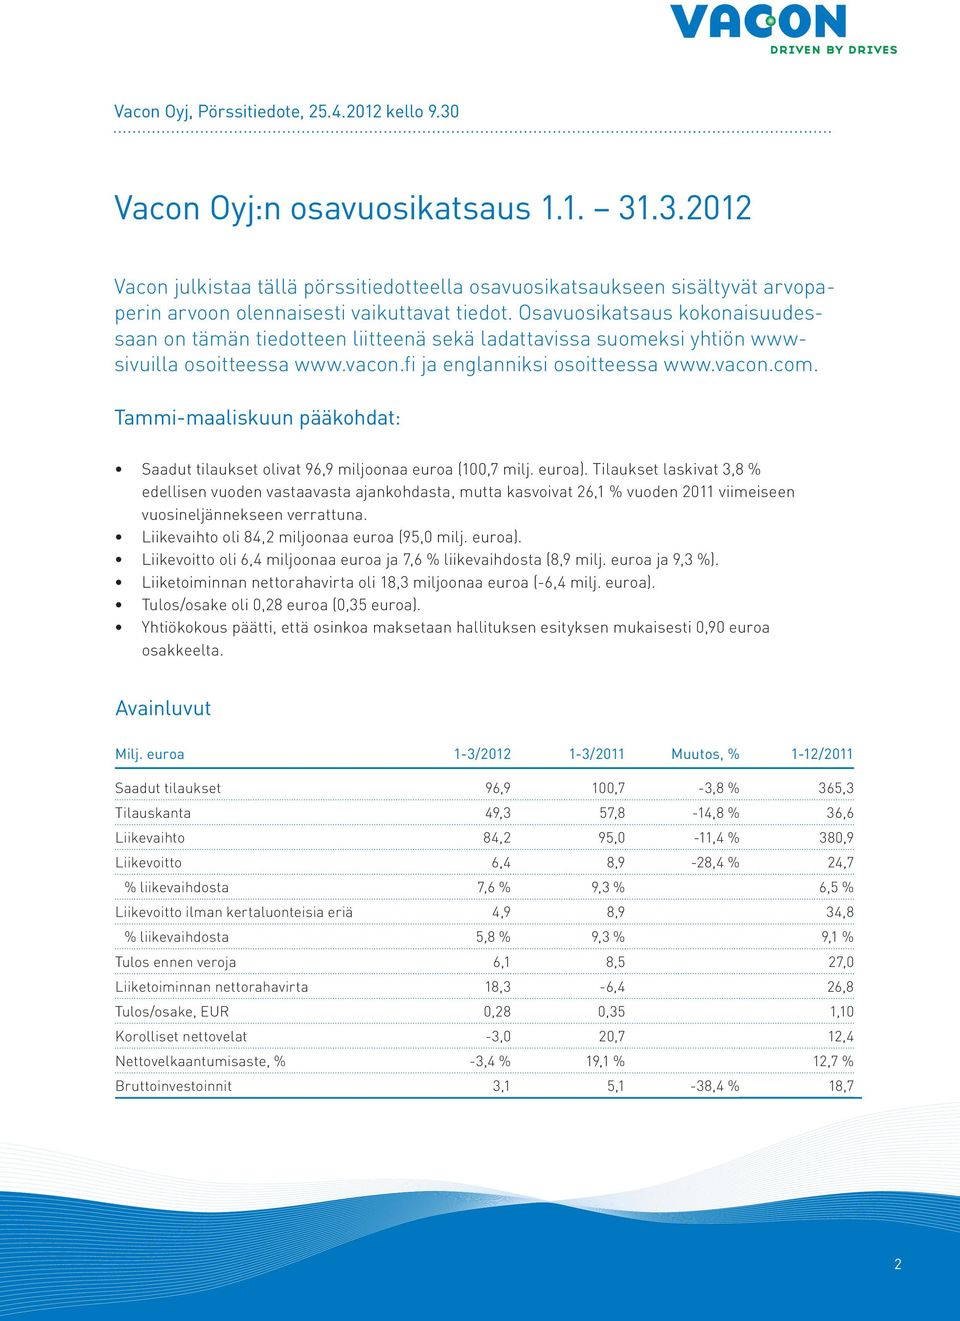 Tammi-maaliskuun pääkohdat: Saadut tilaukset olivat 96,9 miljoonaa euroa (100,7 milj. euroa).